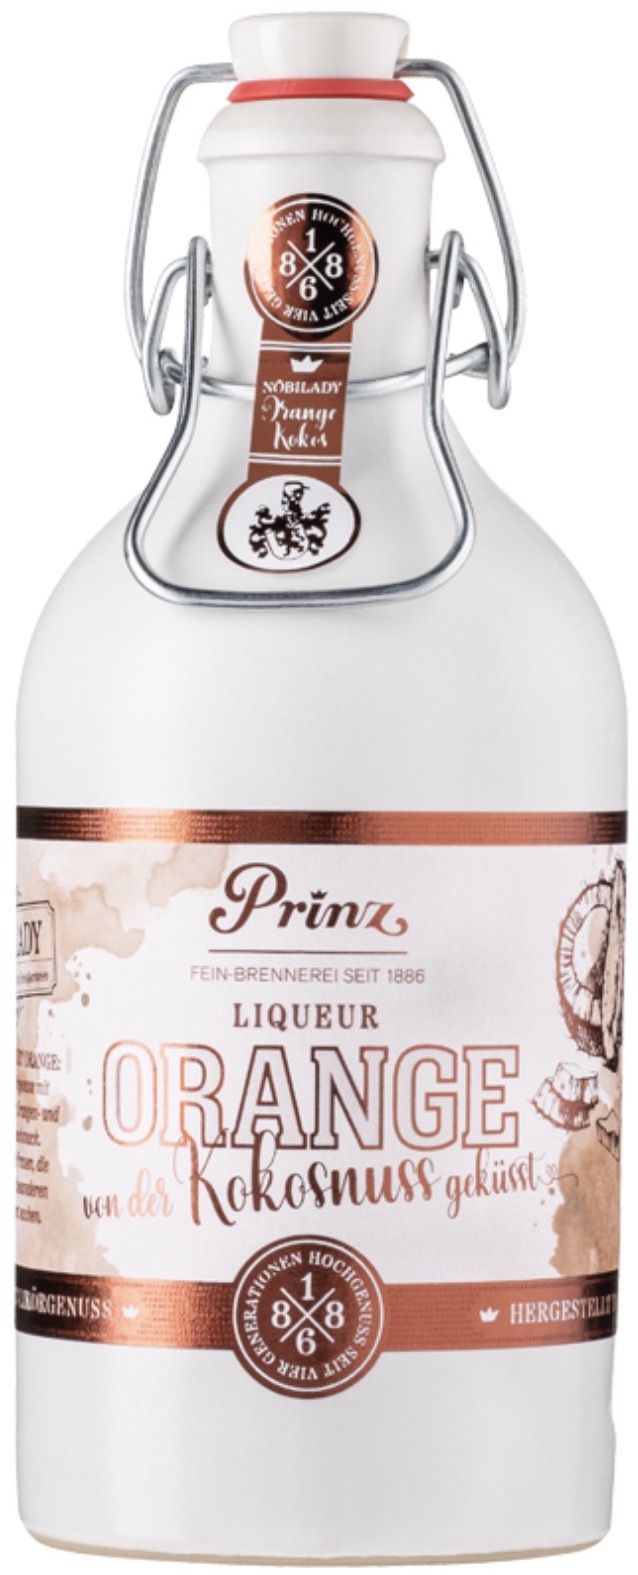 Prinz Orangen Kokusnuss Likör 17,7% vol. 0,5L